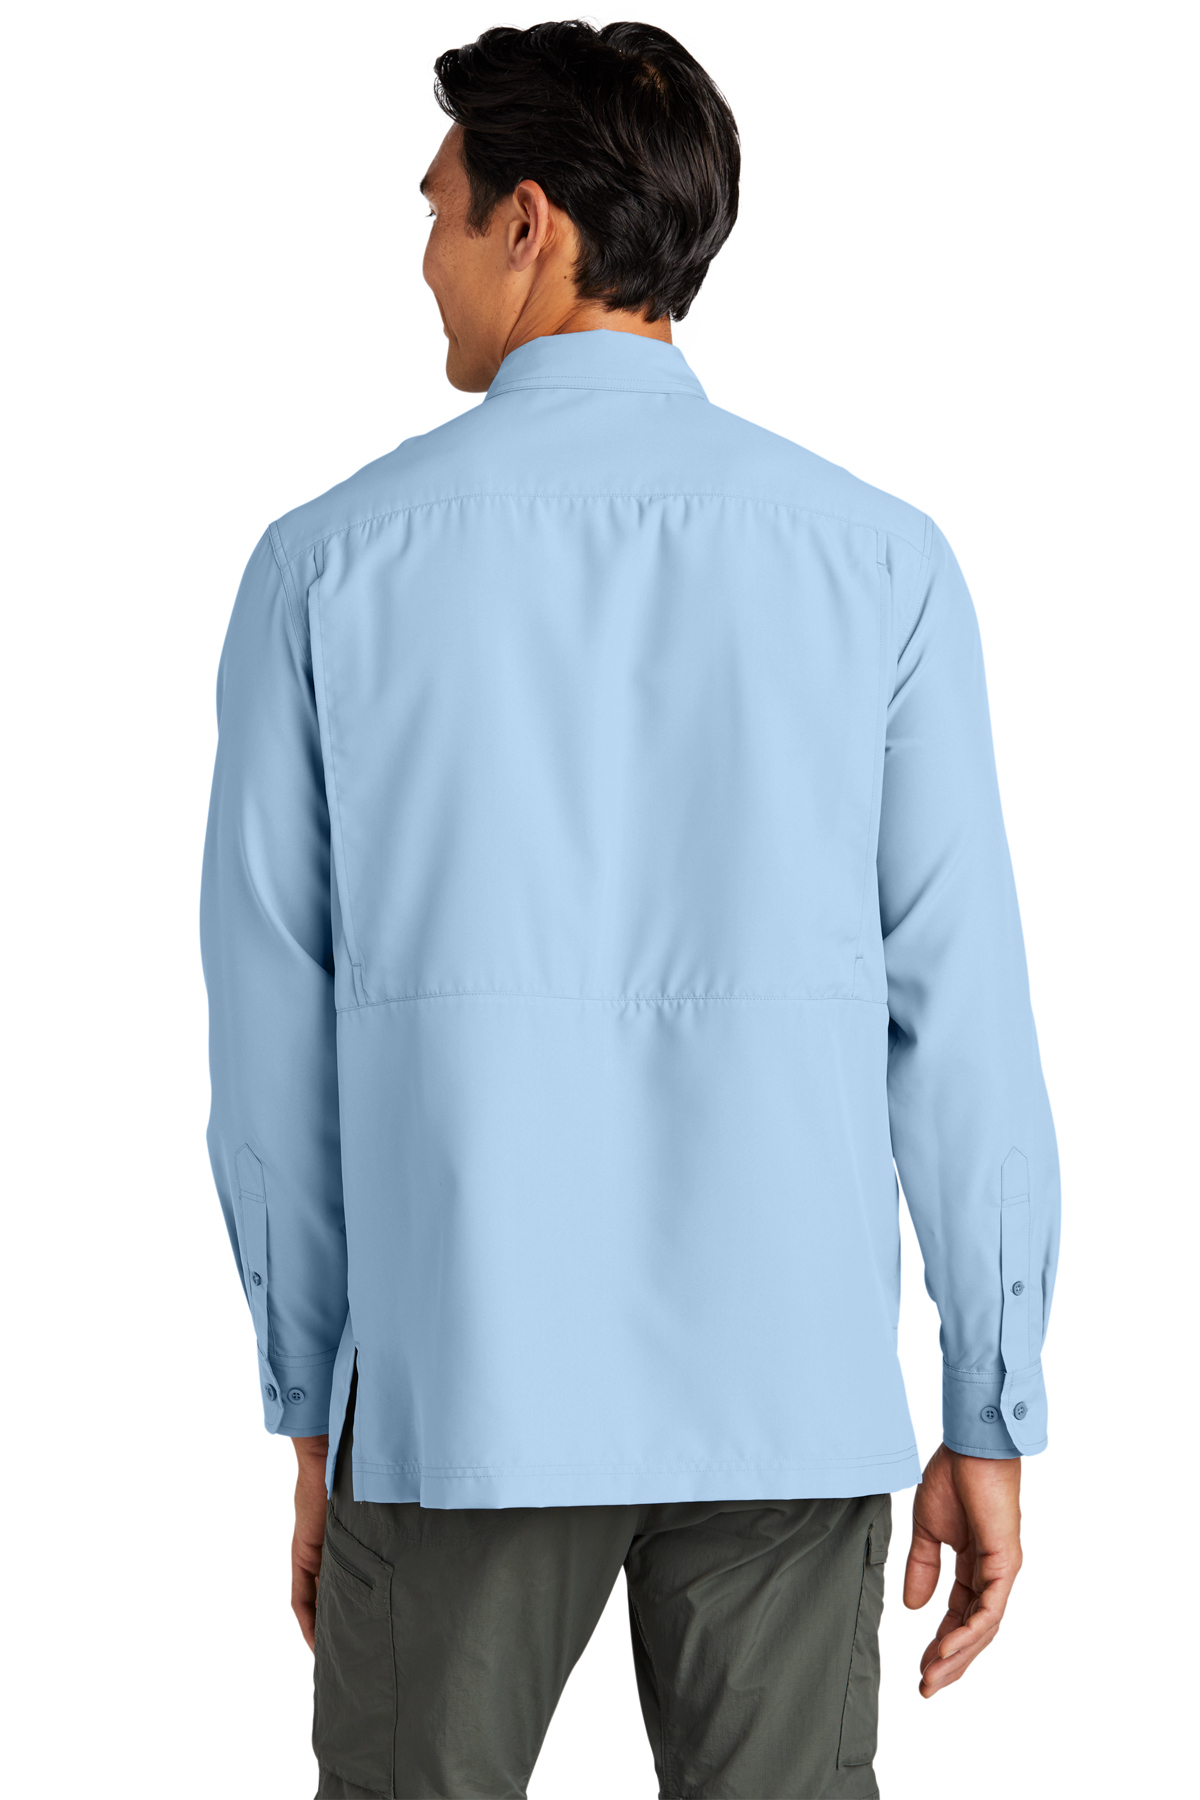 SanMar Wholesale Men's Navy Plain T-Shirt - Vl60, Case of 72, Options, Navy, Case of (72) Pieces